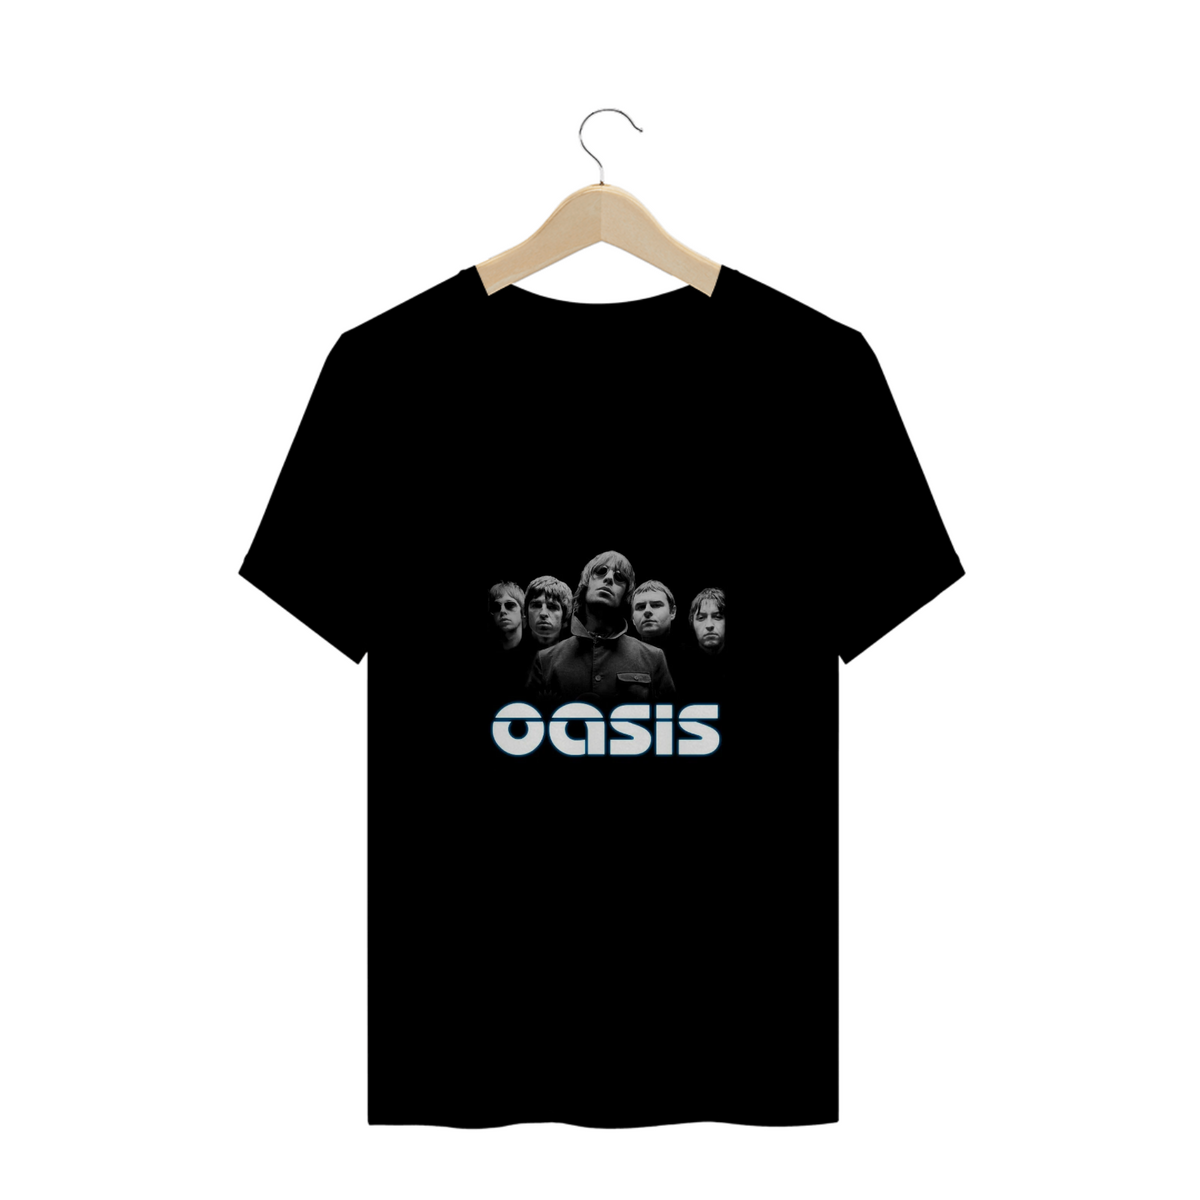 Nome do produto: Camisa Oasis 2